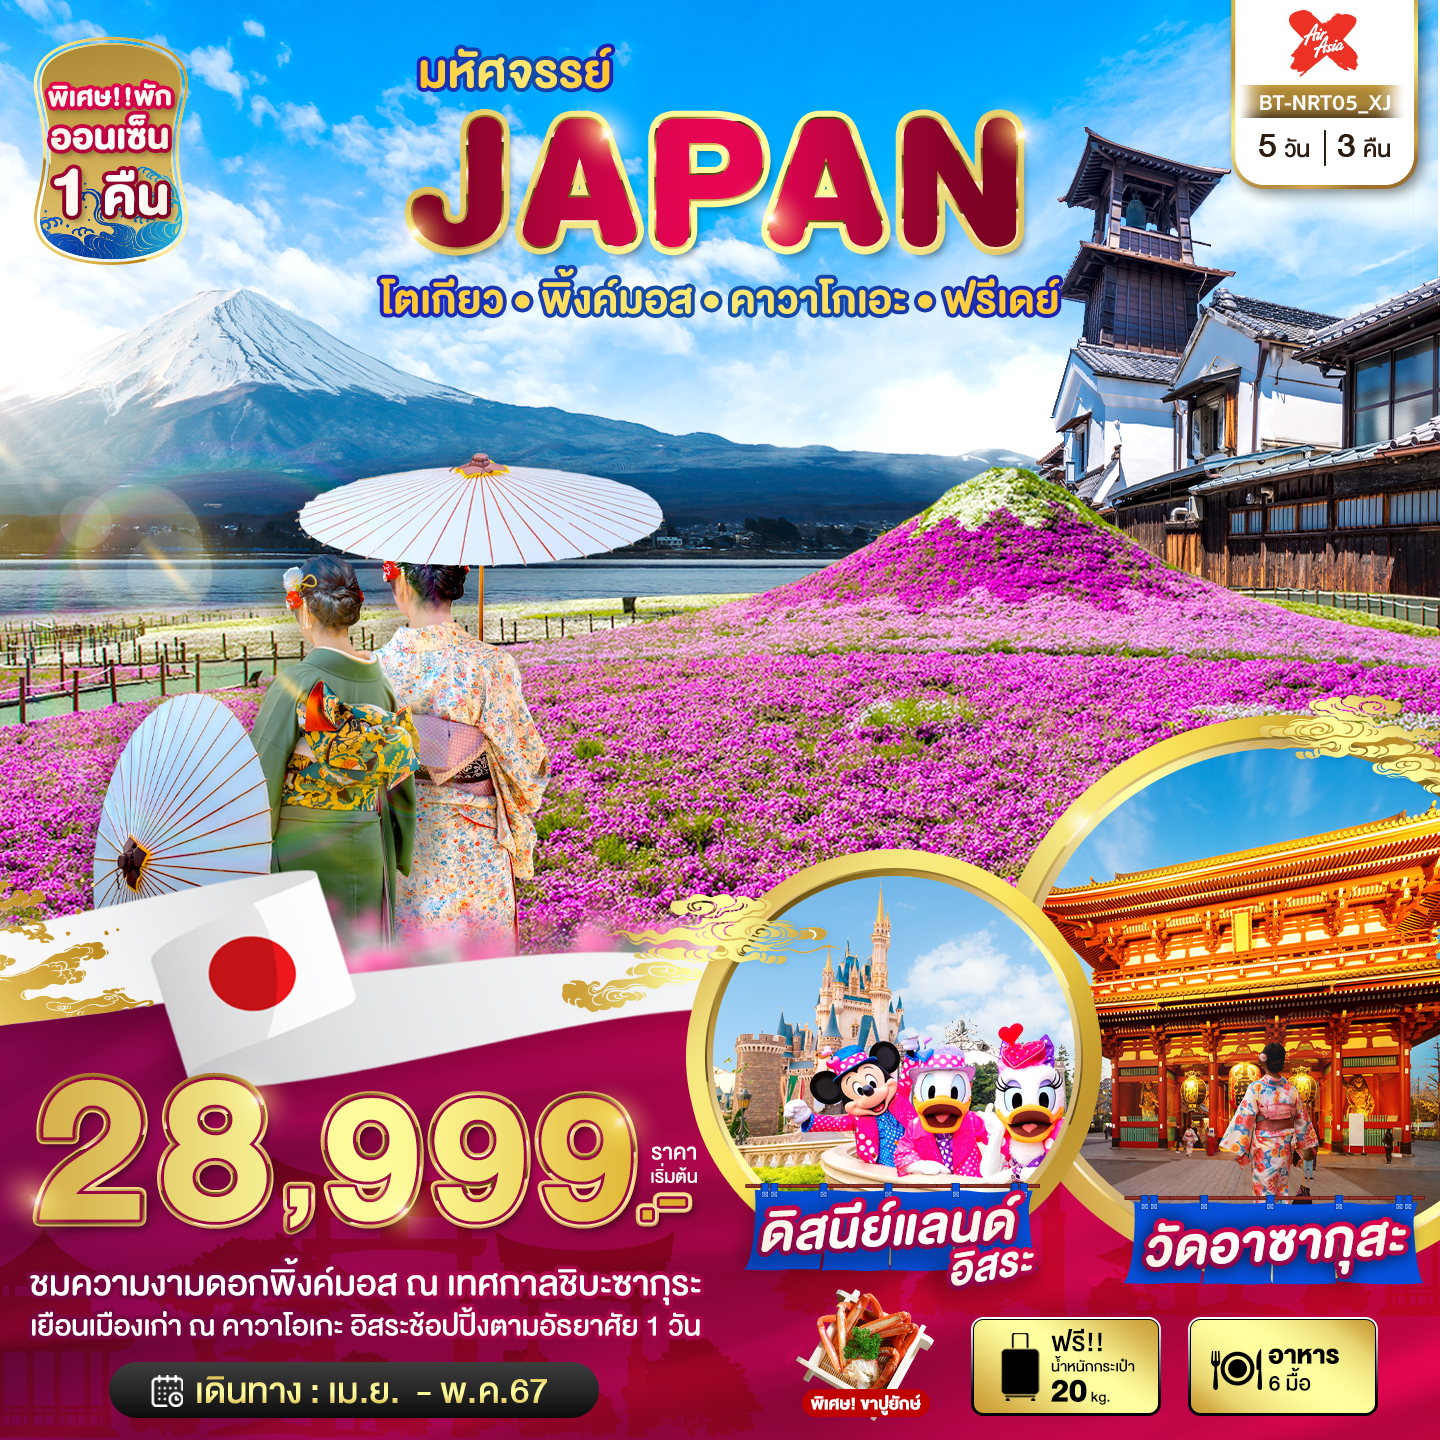 JAPAN ญี่ปุ่น โตเกียว พิ้งค์มอส คาวาโกเอะ ฟรีเดย์ 5 วัน 3 คืน เดินทาง เมษายน - พฤษภาคม 67 เริ่มต้น 28,999.- Air Asia X (XJ)